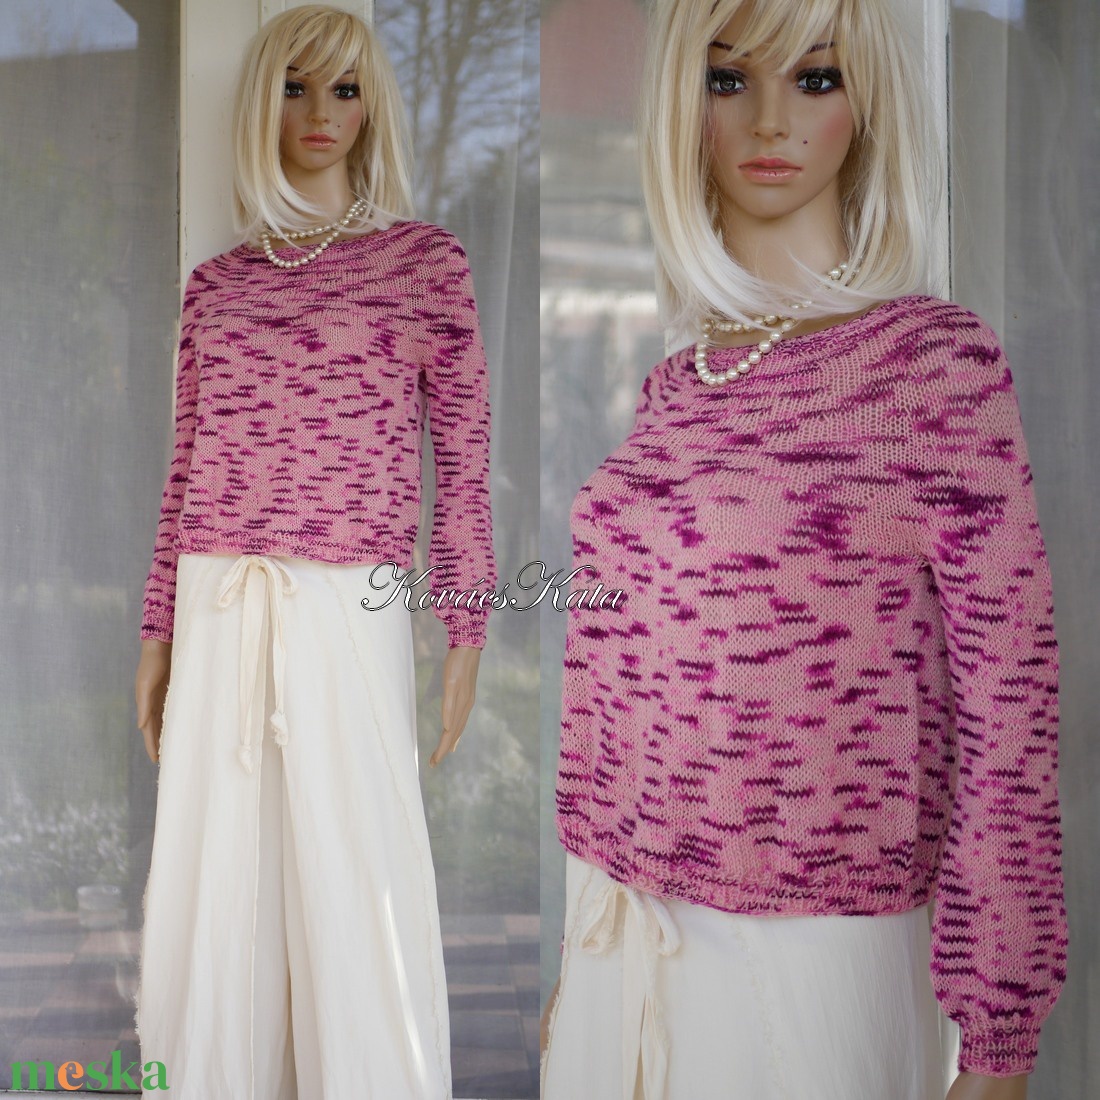 CRAZY LINEN / puncs - exkluzív egyedi festésű gyapjú-len kézzel kötött  pulóver  - ruha & divat - női ruha - pulóver & kardigán - Meska.hu